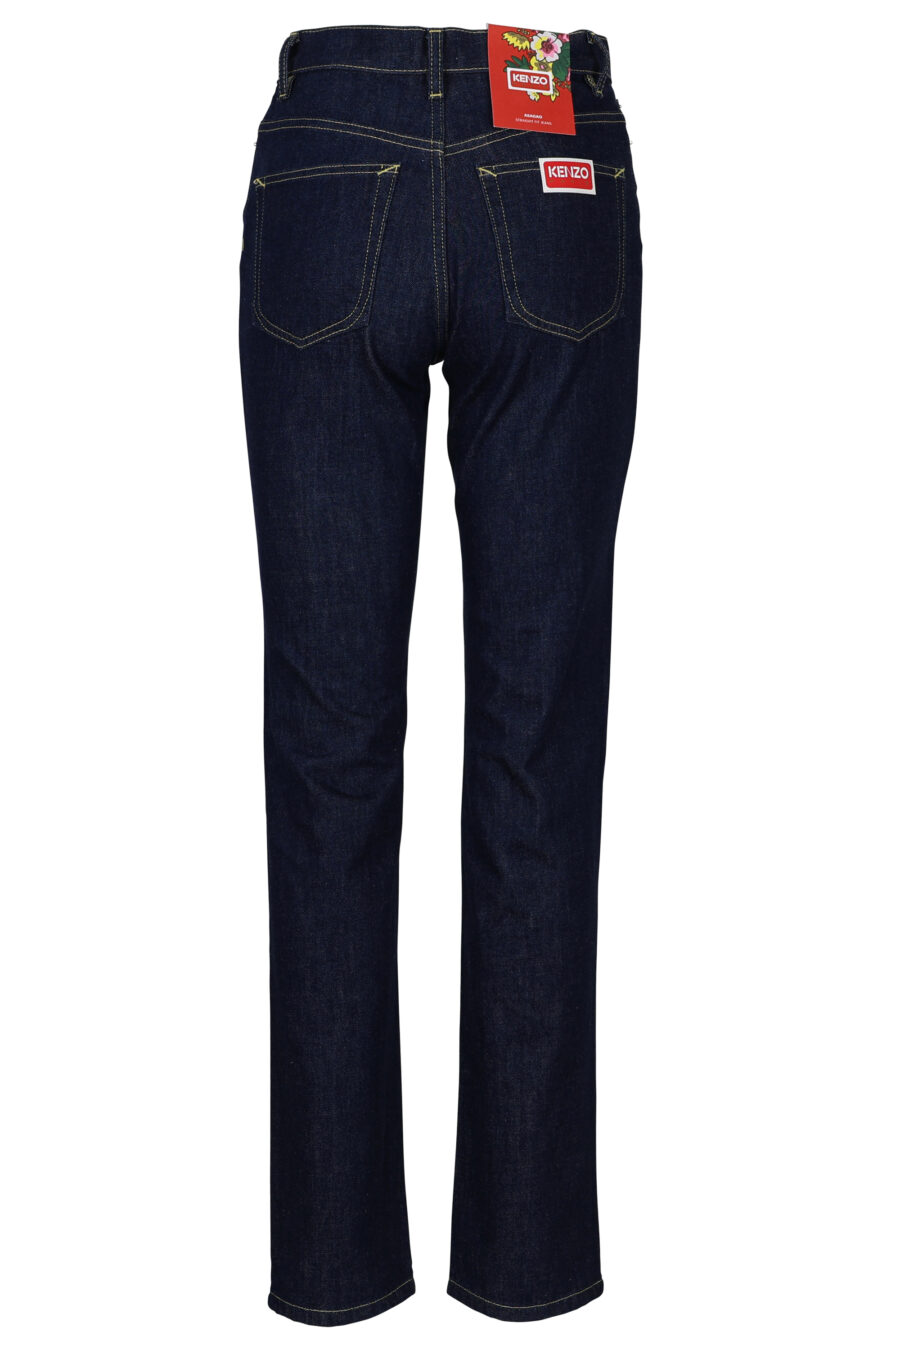 Pantalón vaquero azul oscuro recto con minilogo "kenzo paris" - 3612230511927 2